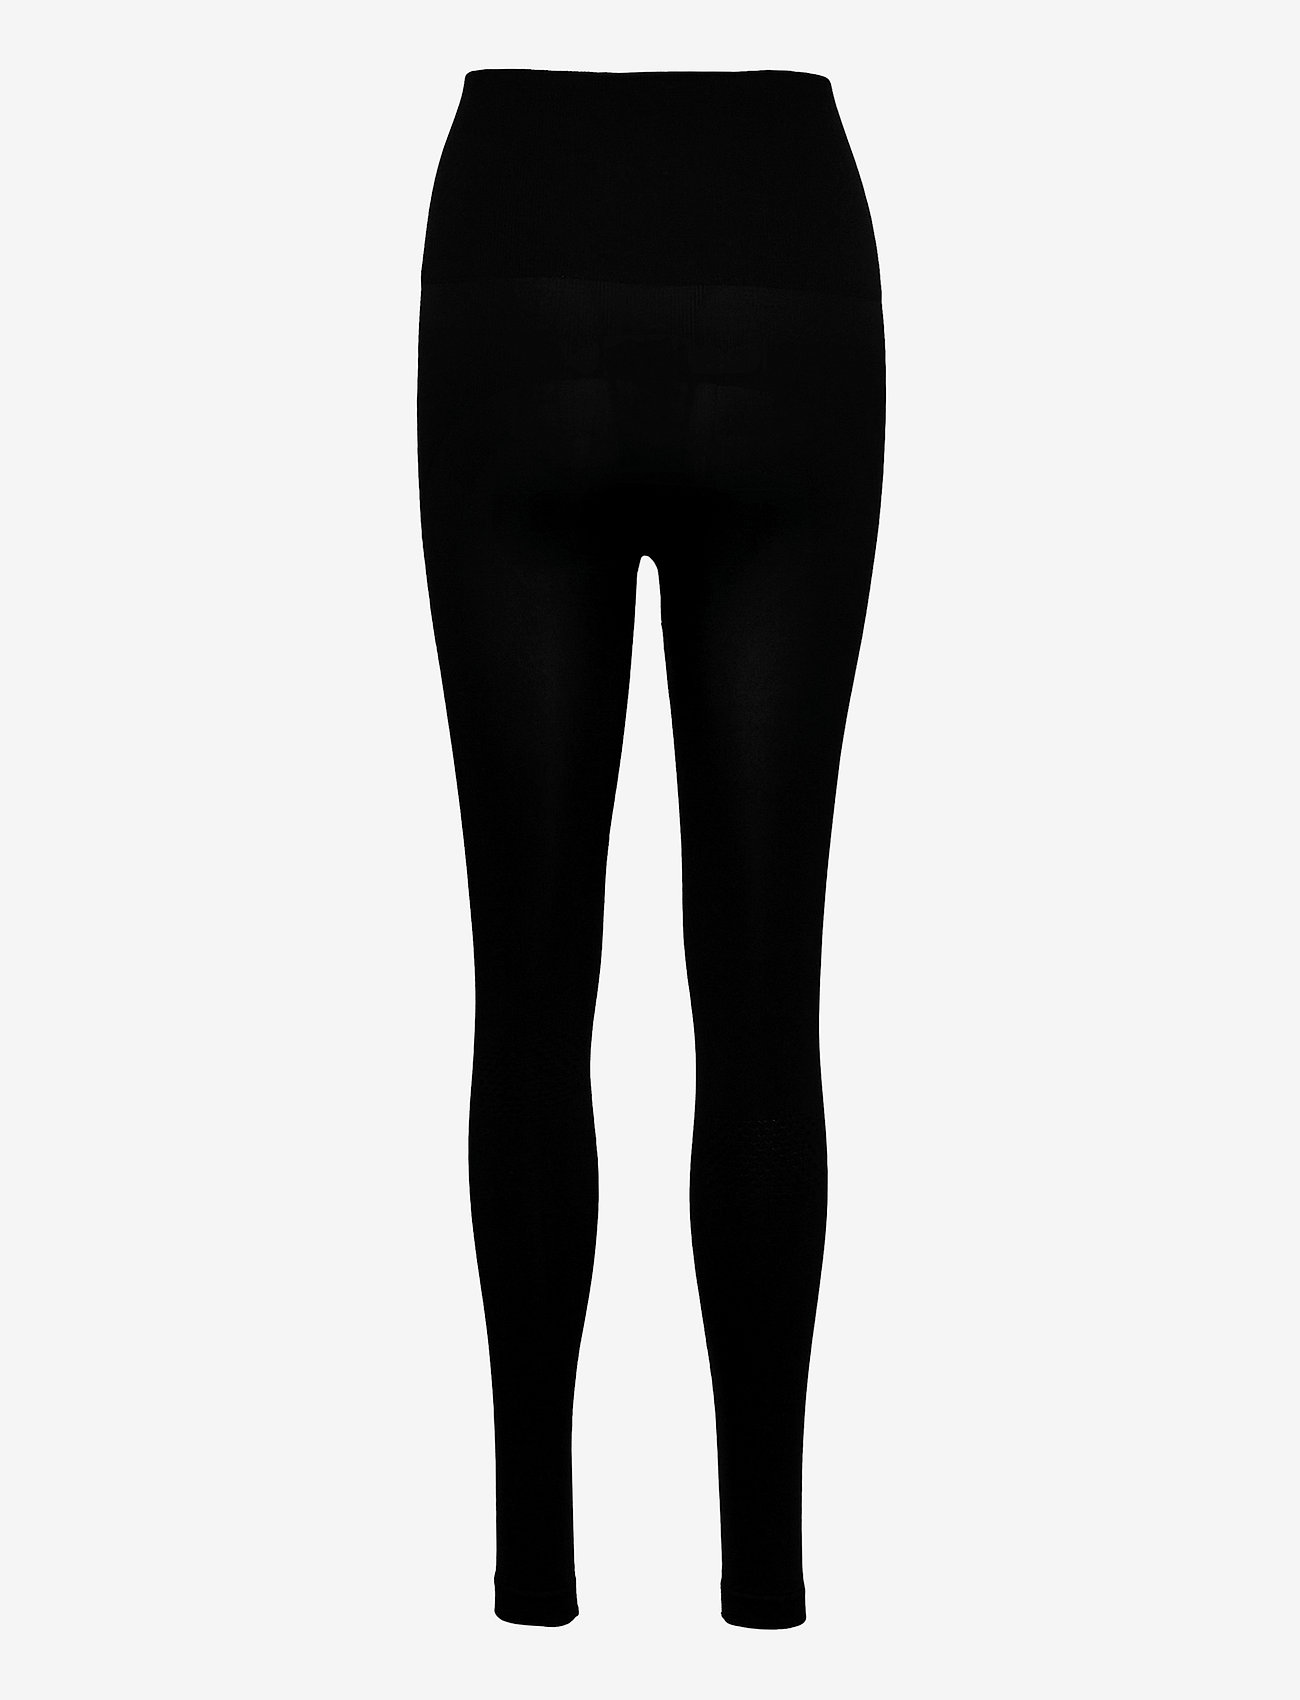 Boob - Support leggings - legingi - black - 1